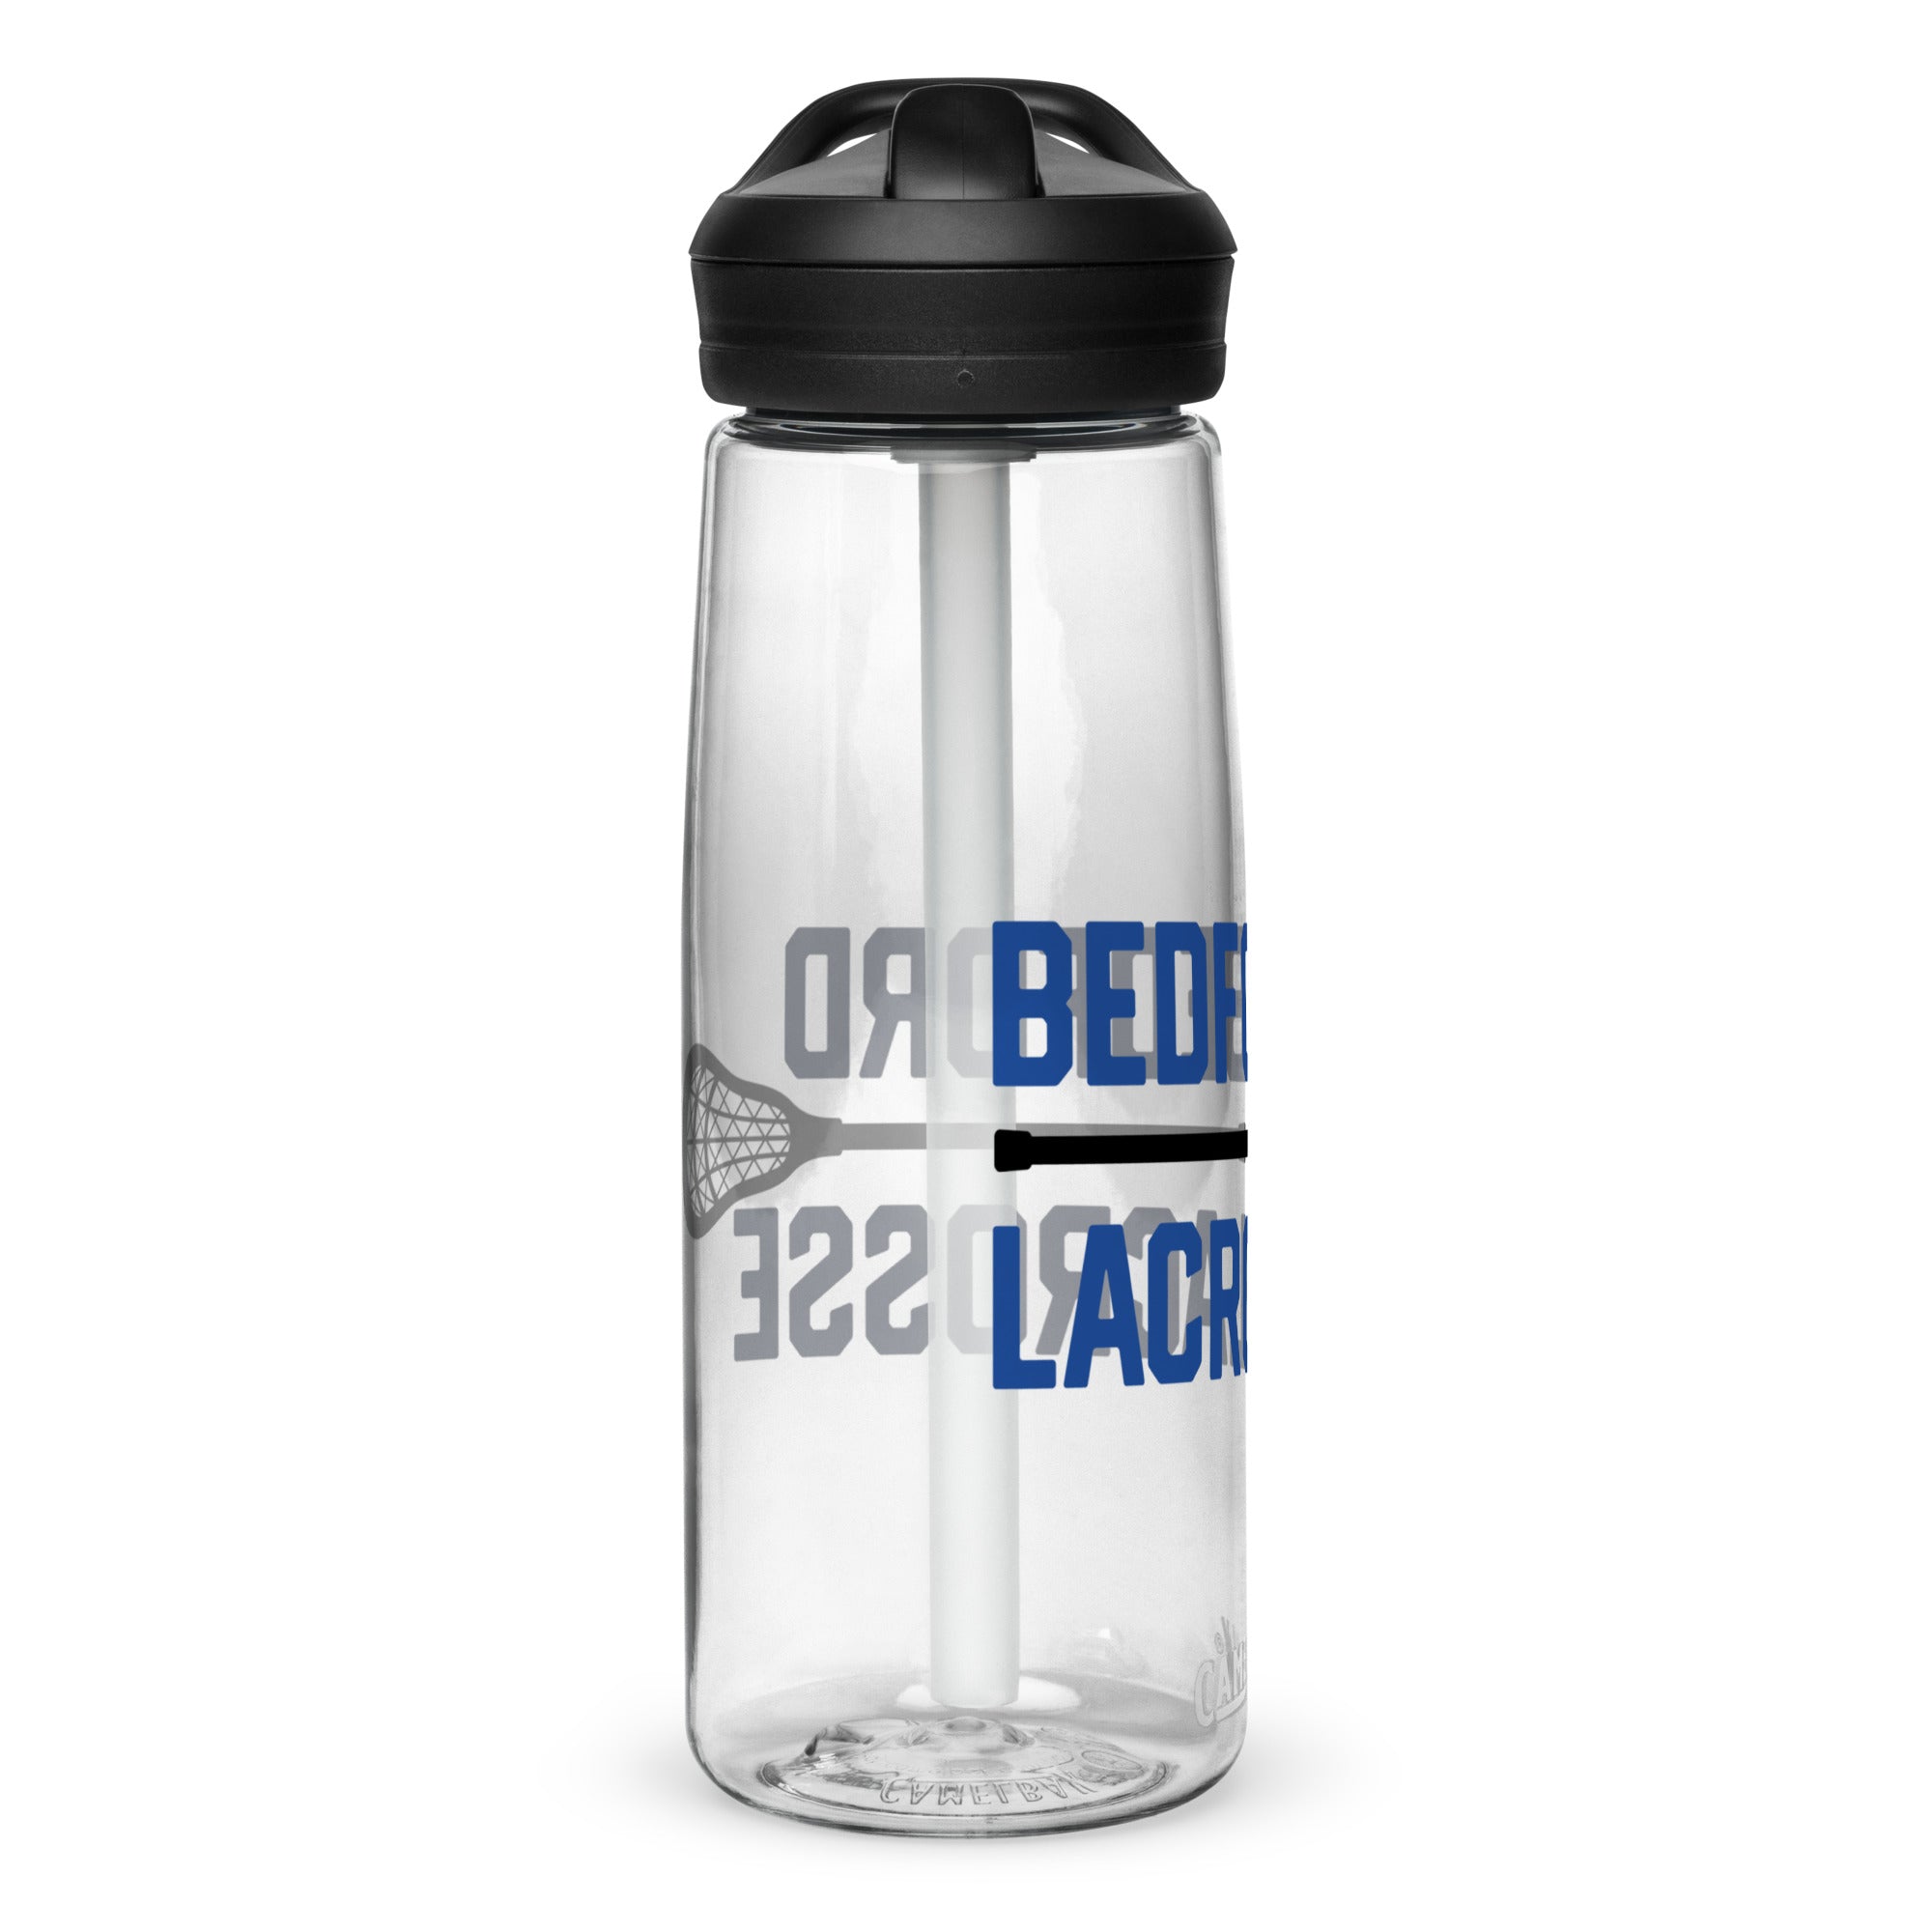 Bedford Sports water bottle